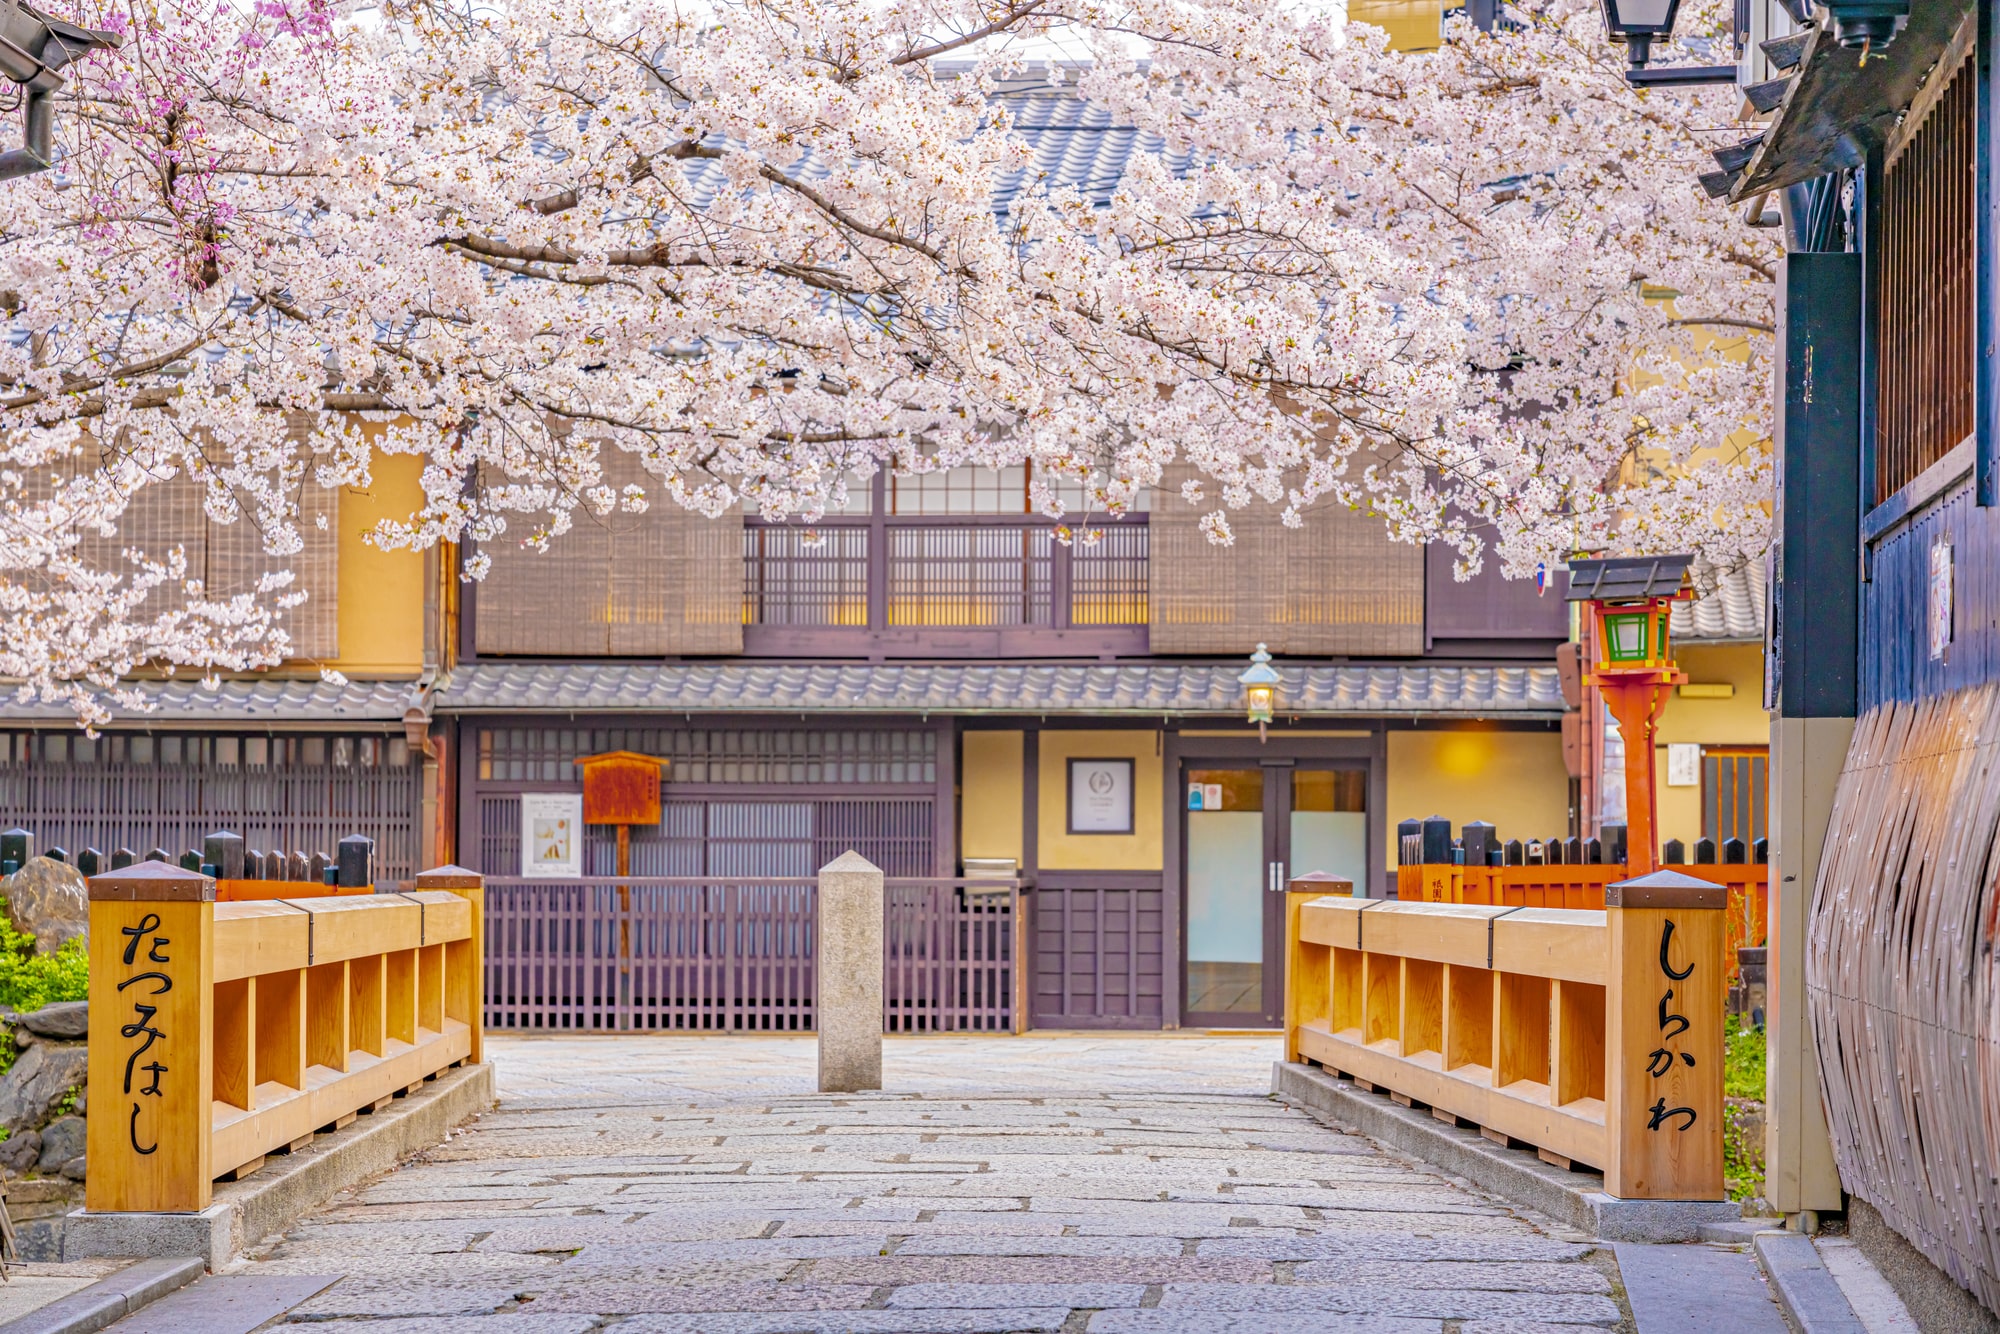 京都の桜 混雑しない朝観光がおすすめ サイクリングで桜の名所を巡るモデルコース Skyticket 観光ガイド